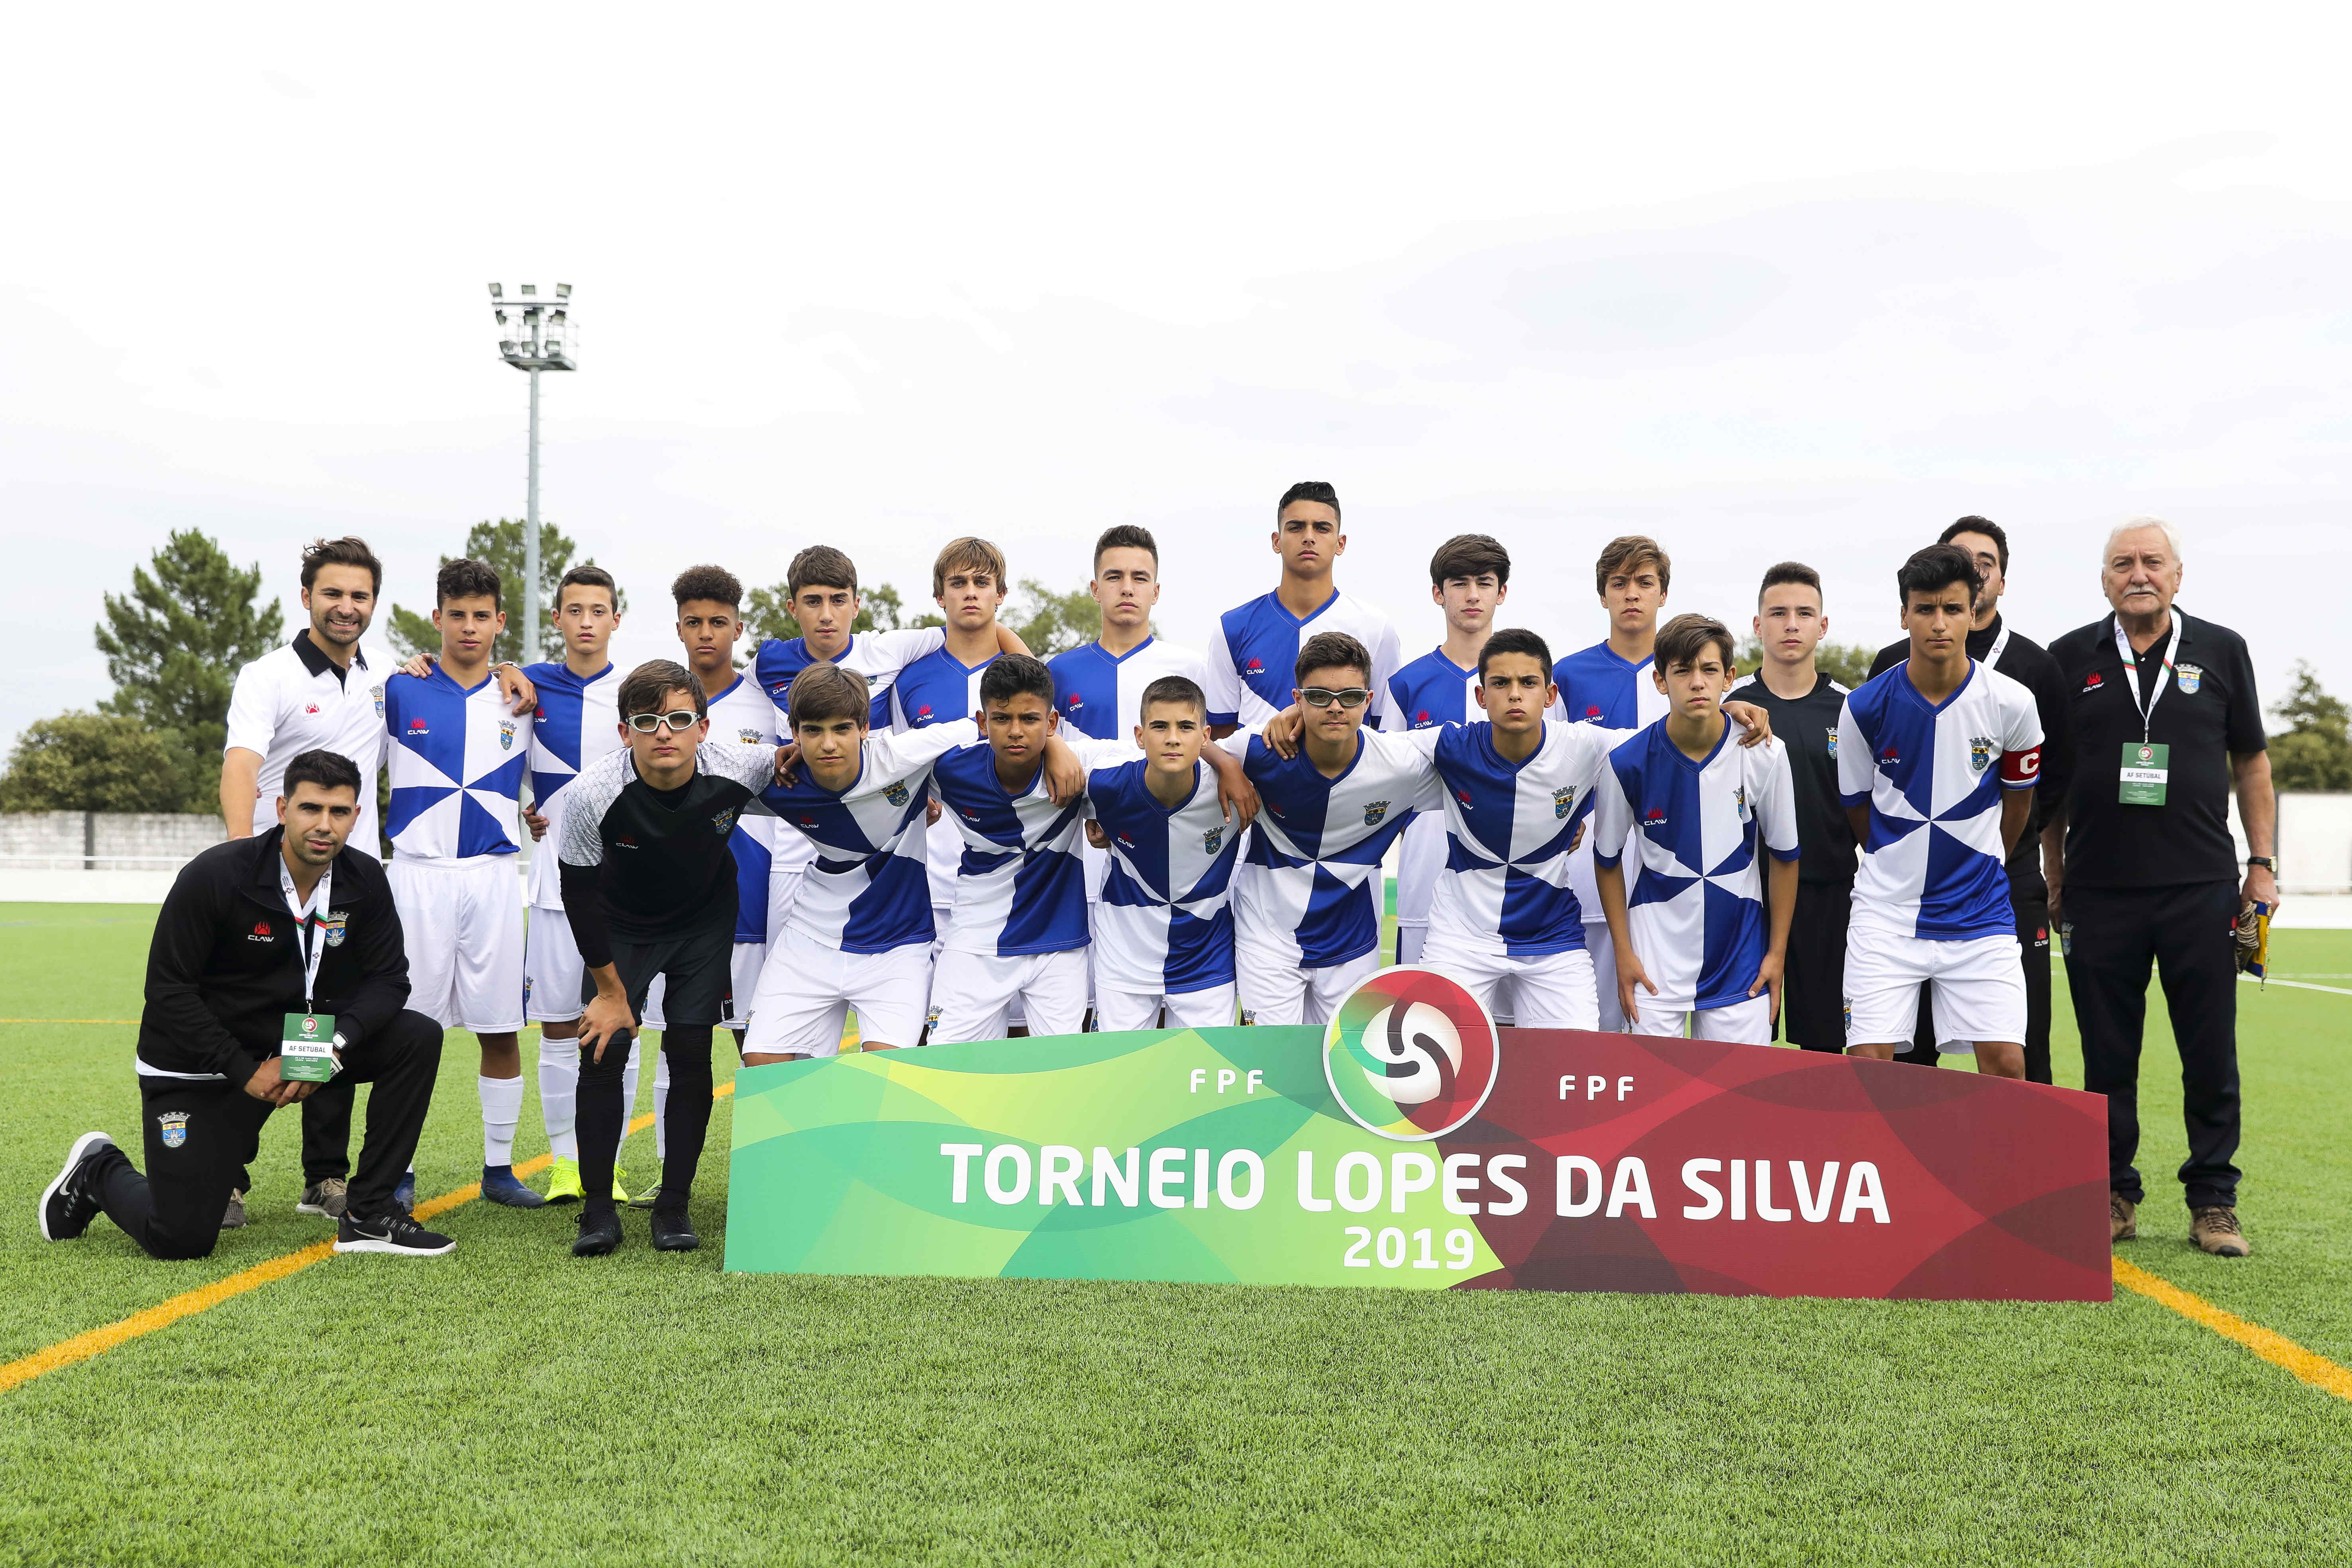 Triunfo na estreia (Diário do Torneio Lopes da Silva 2019 - II)